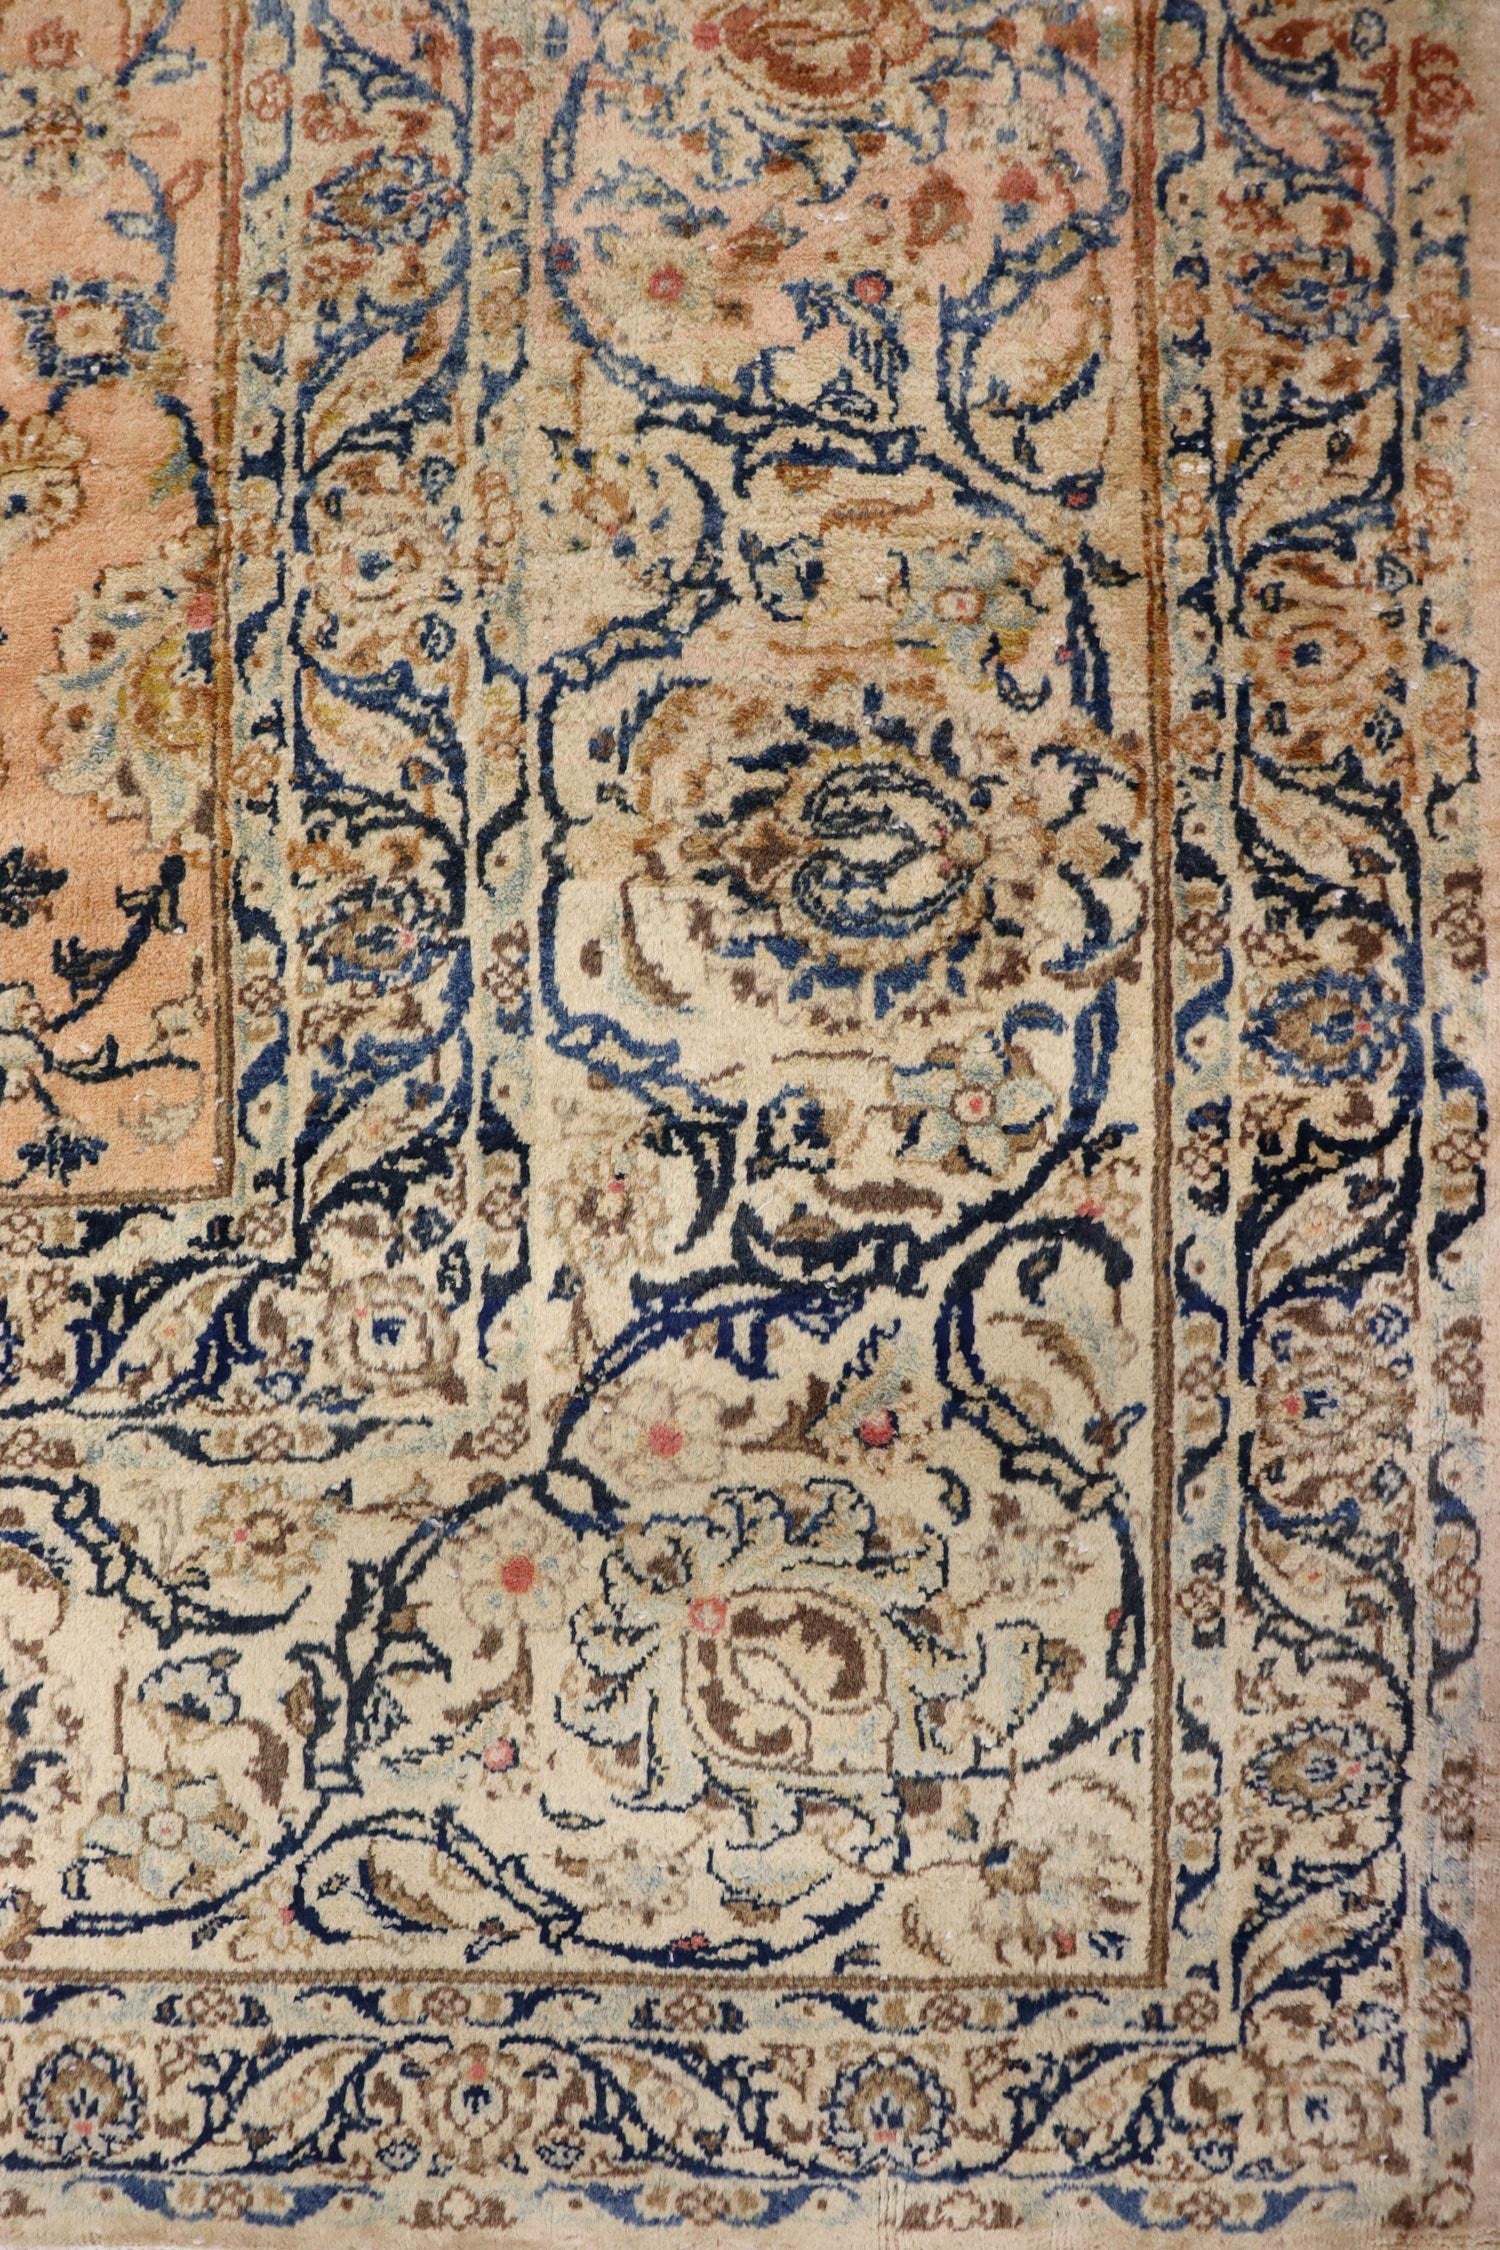 Antique Kashan Handwoven Traditional Rug, J65493